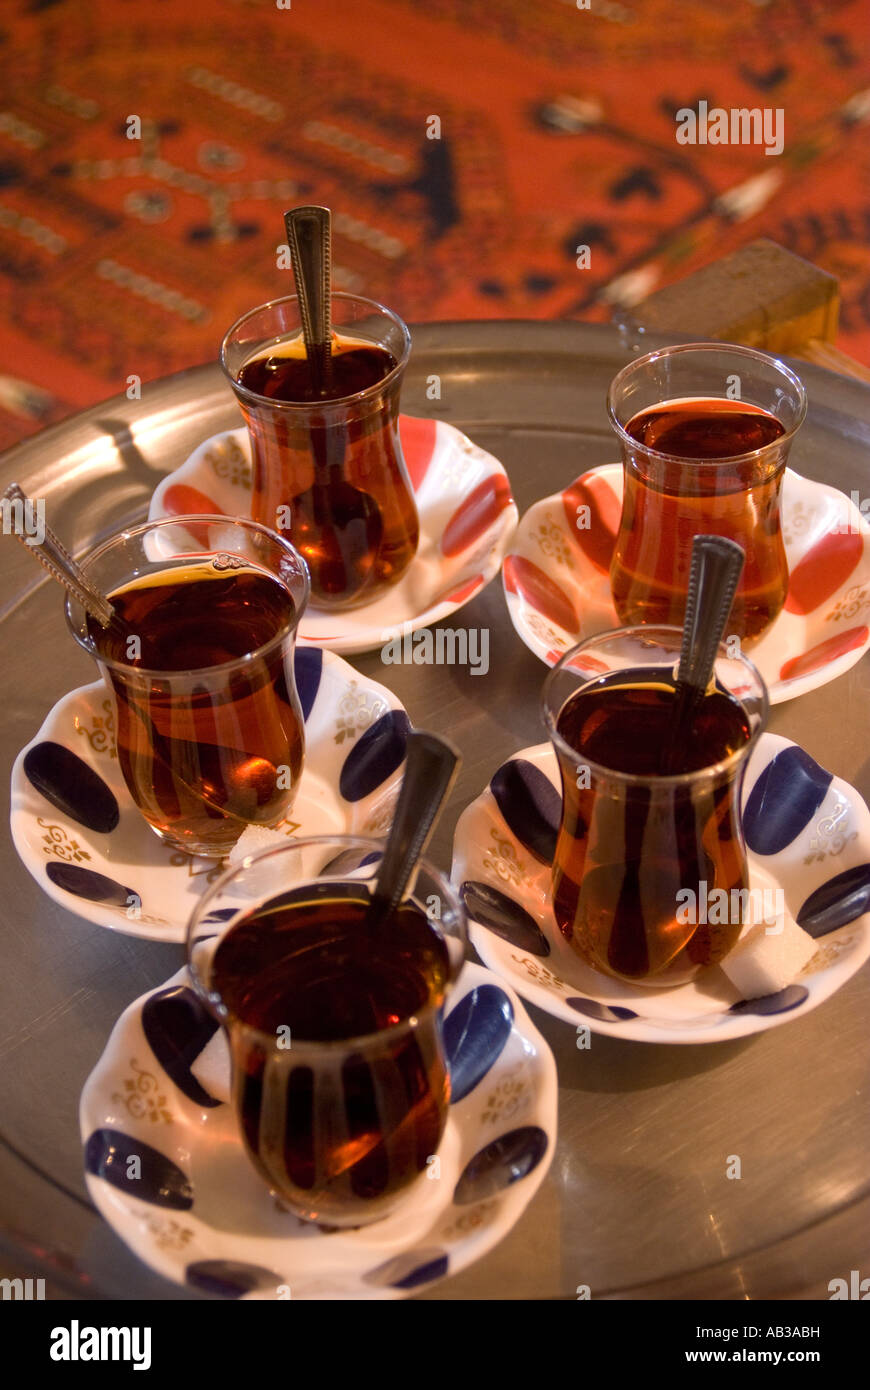 Turkish tea, Turkey Stock Photo